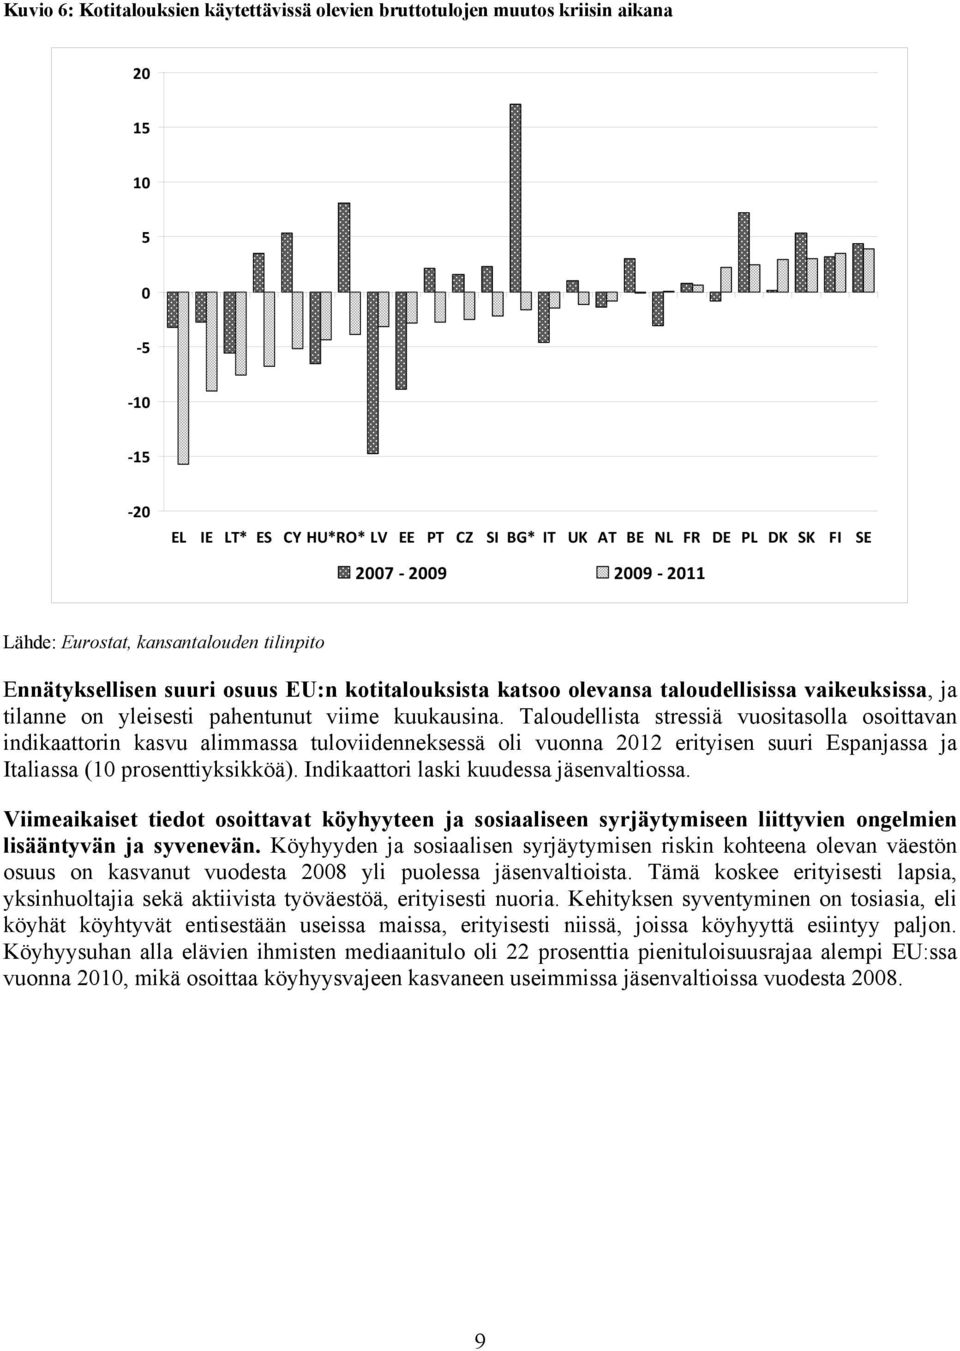 Taloudellista stressiä vuositasolla osoittavan indikaattorin kasvu alimmassa tuloviidenneksessä oli vuonna 2012 erityisen suuri Espanjassa ja Italiassa (10 prosenttiyksikköä).